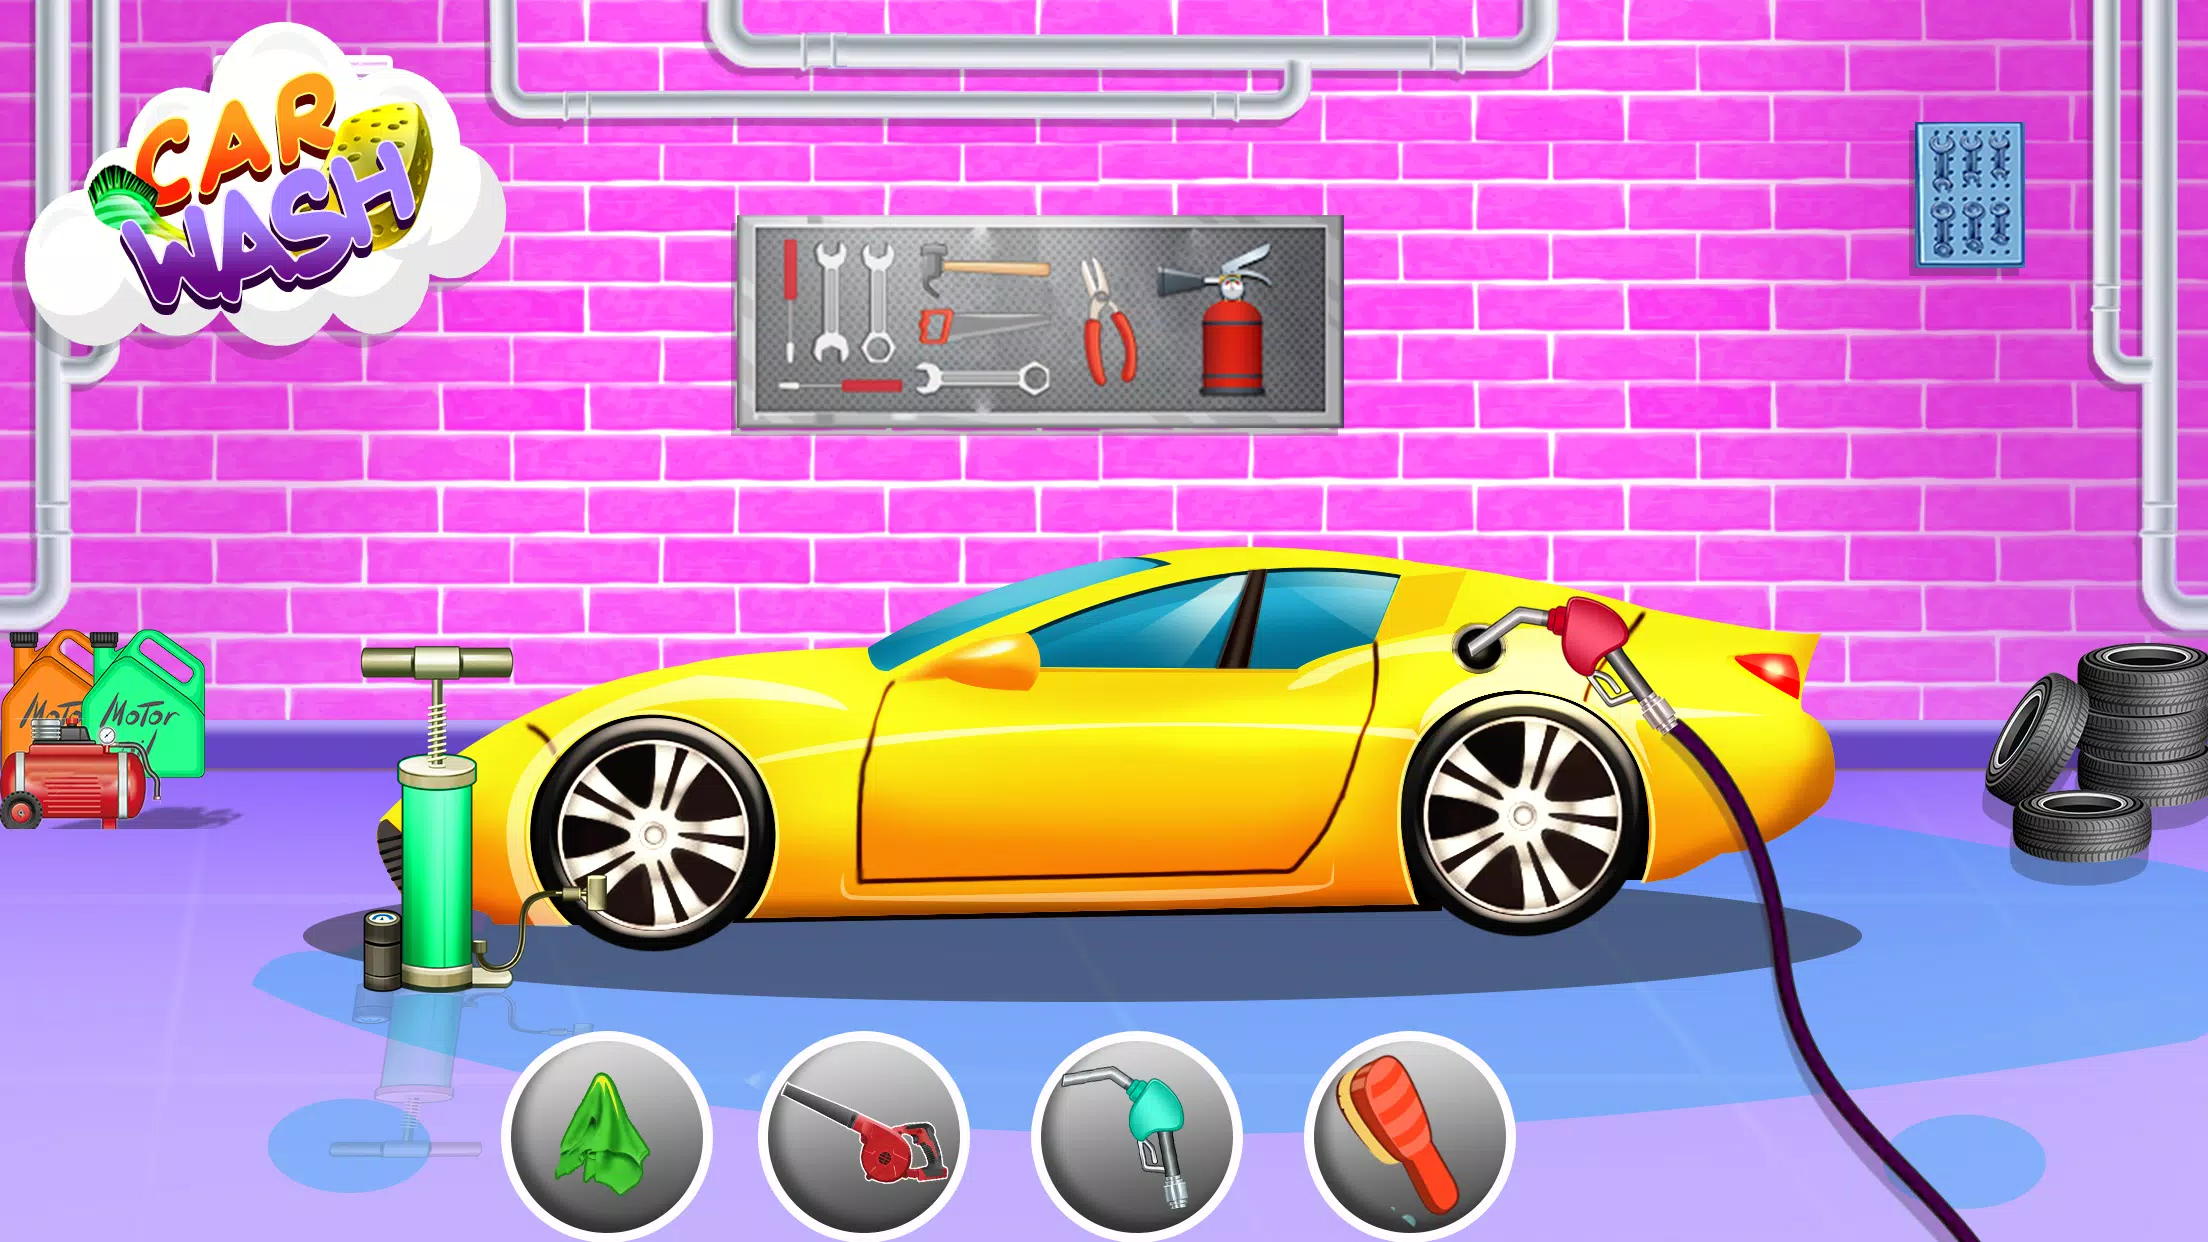 لعبة أطفال- لعبة ورشة غسيل السيارات المرآب for Android - APK Download